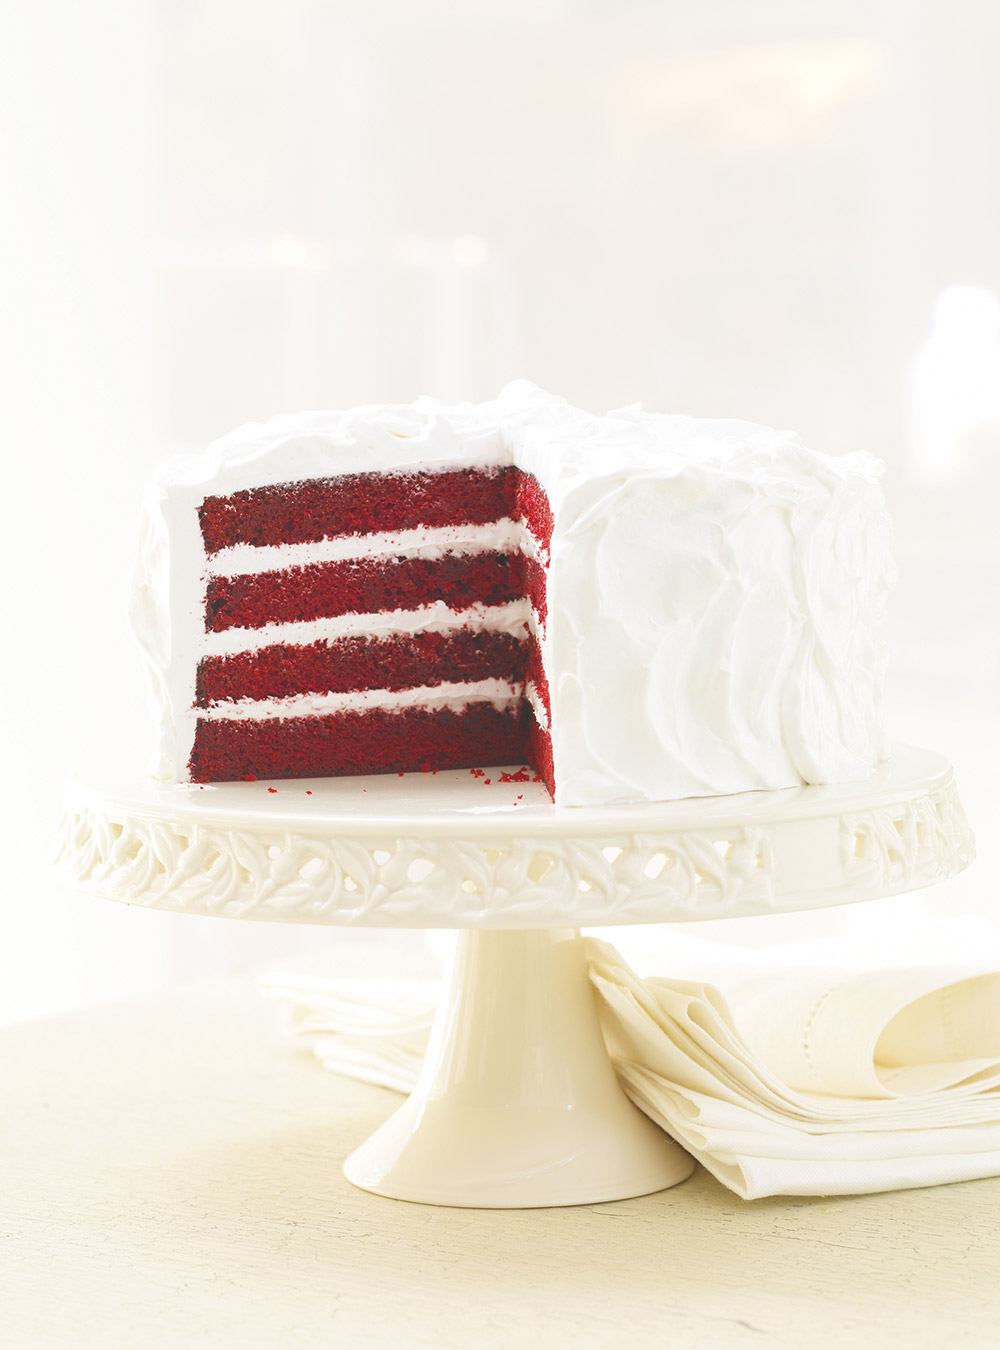 Red Velvet Cake with Italian Meringue Frosting